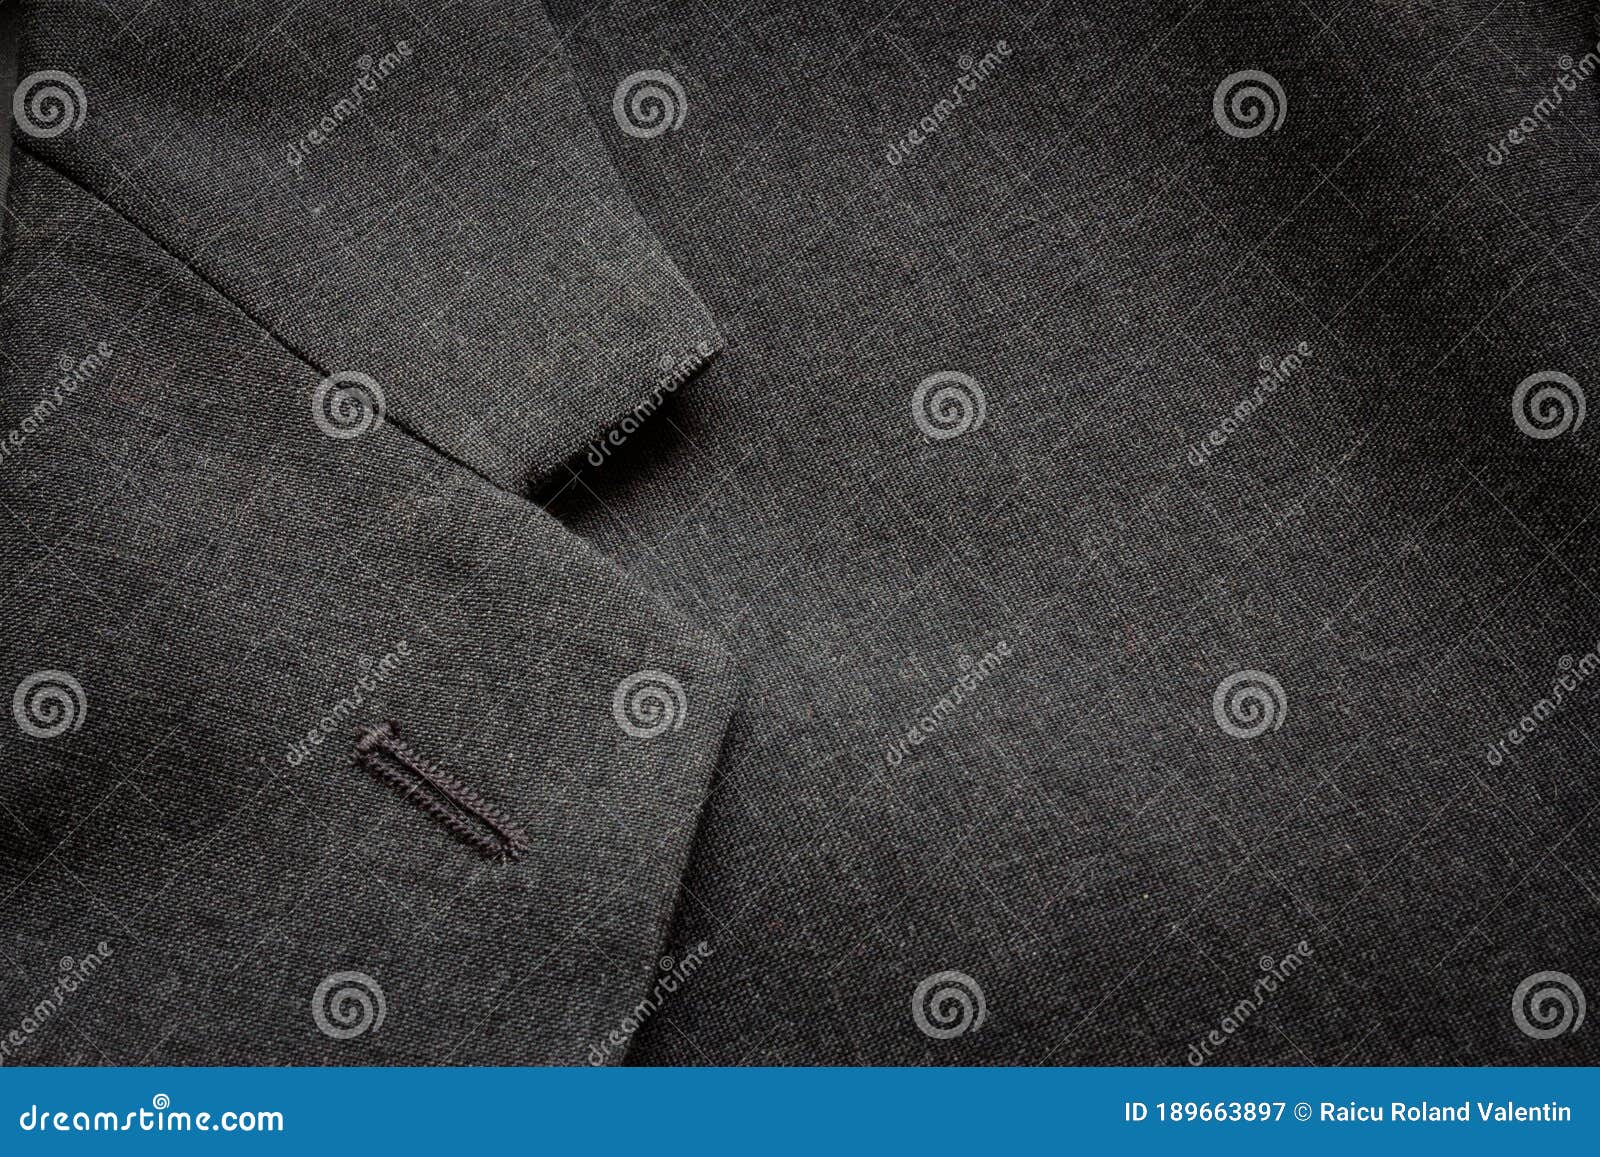 Elegant Background Business Texture Stock Image - Image of coat ...